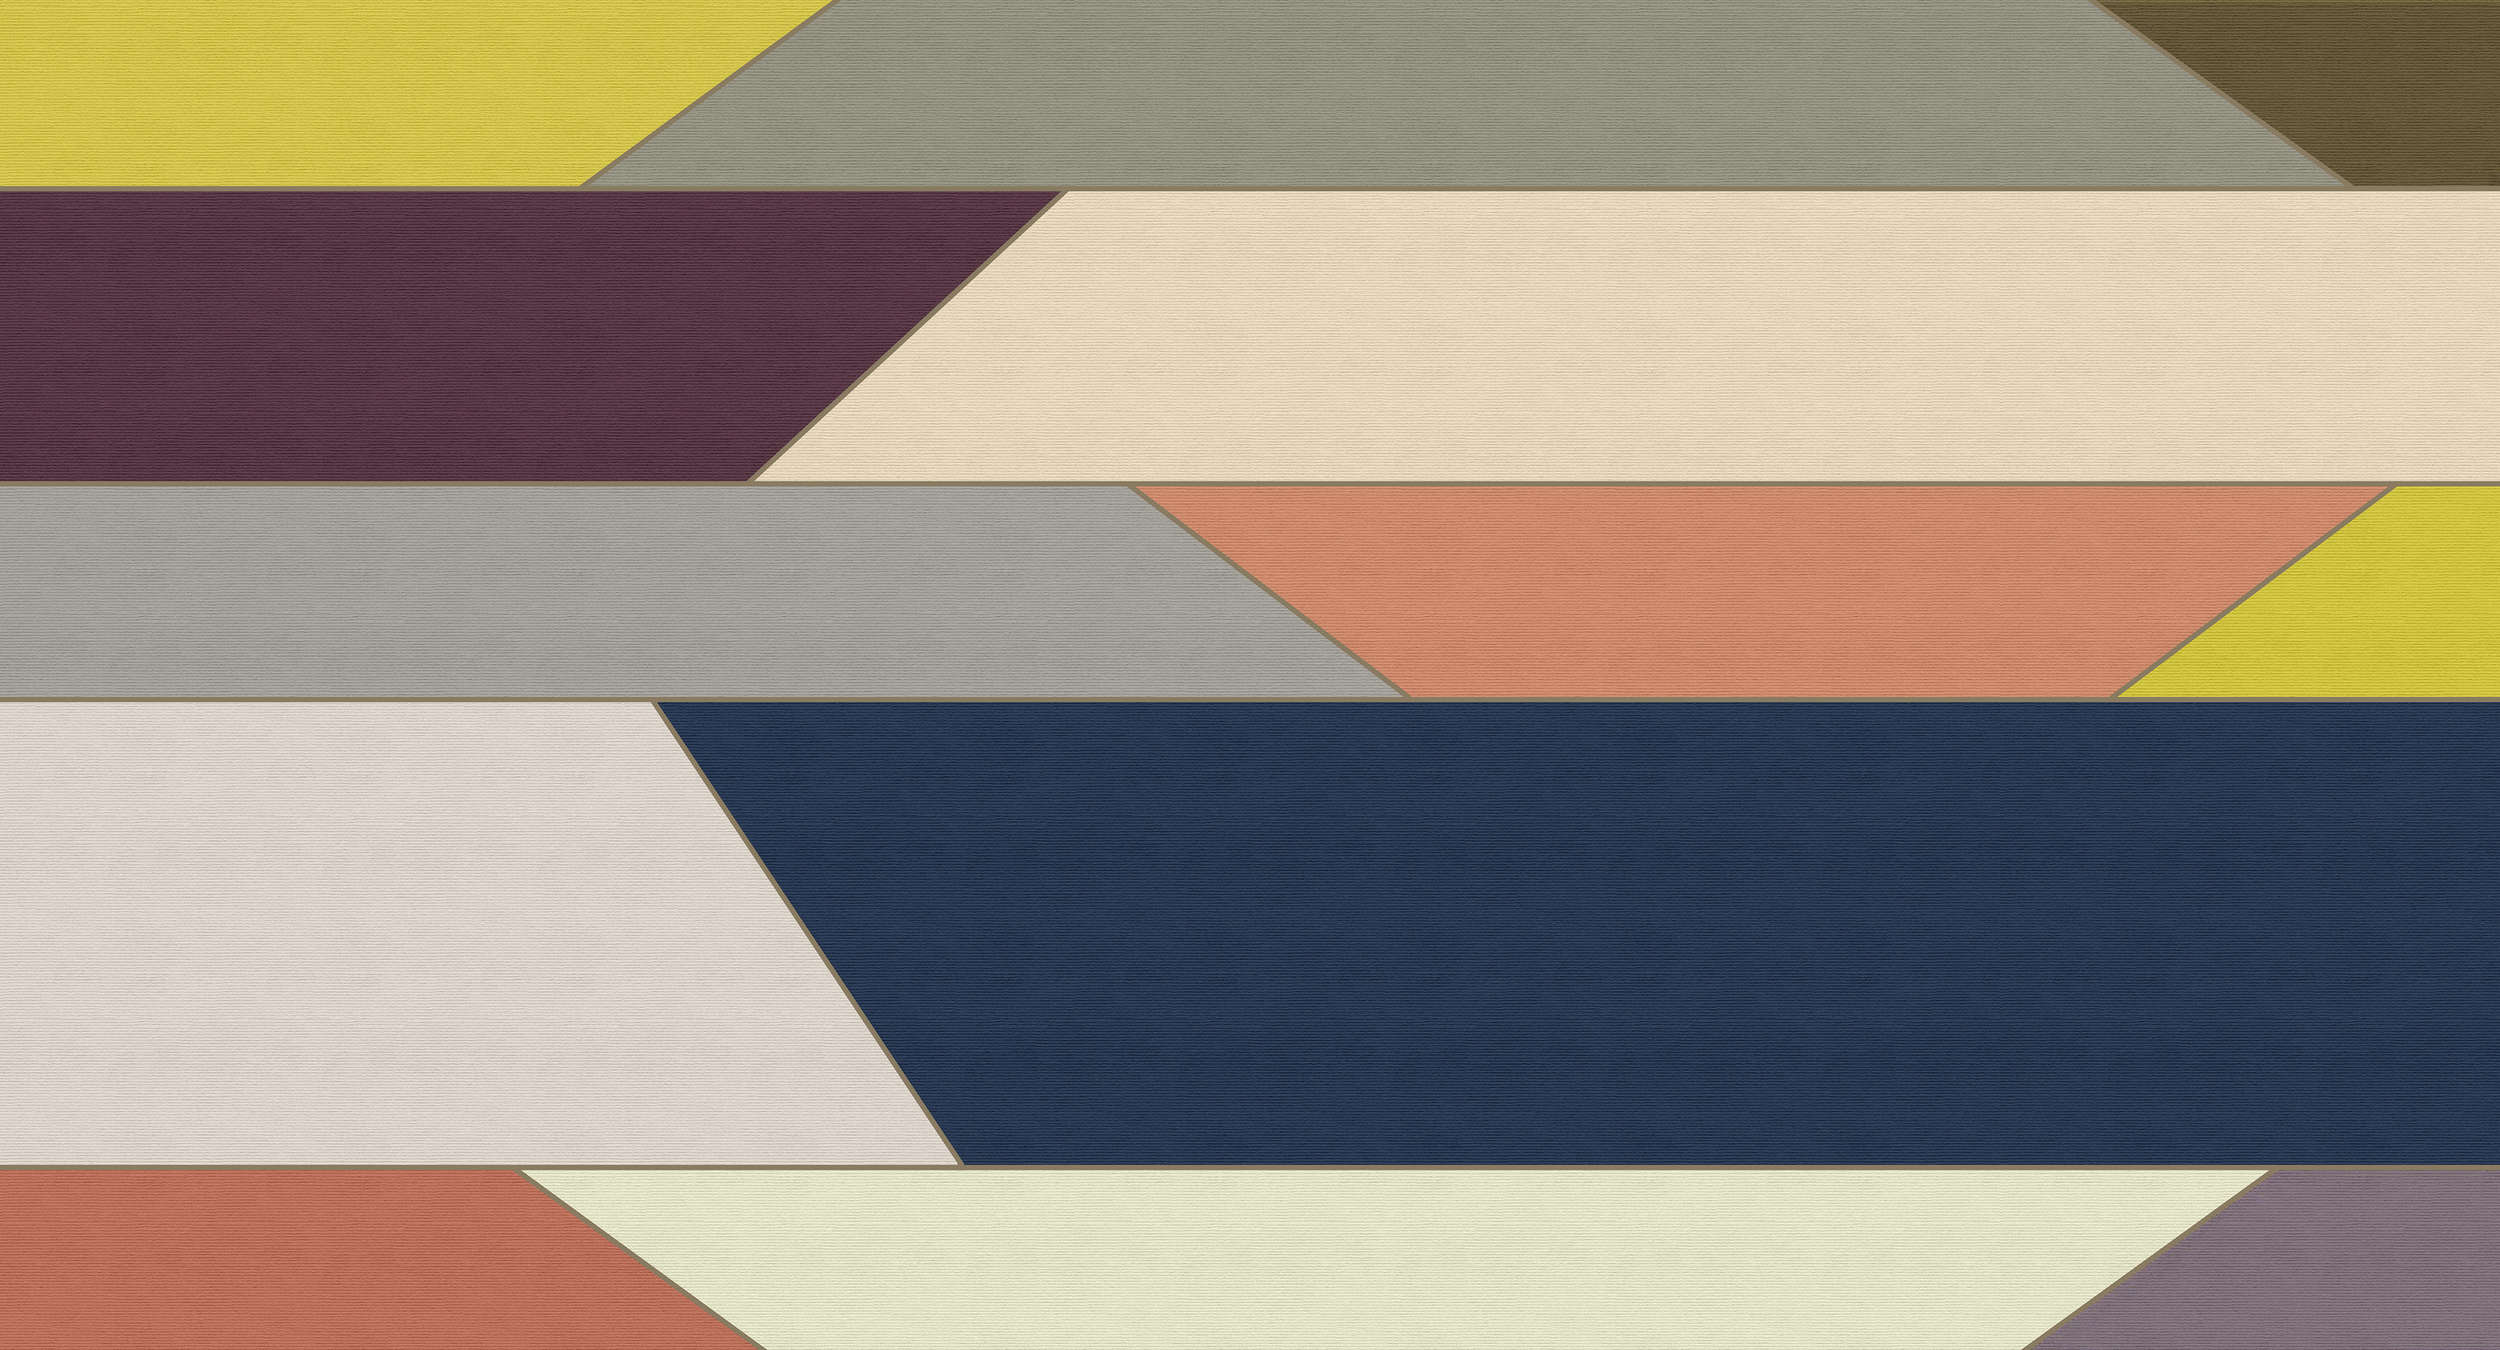             Geometry 1 - Papier peint à rayures horizontales multicolores - À structure côtelée - Beige, Bleu | Intissé lisse mat
        